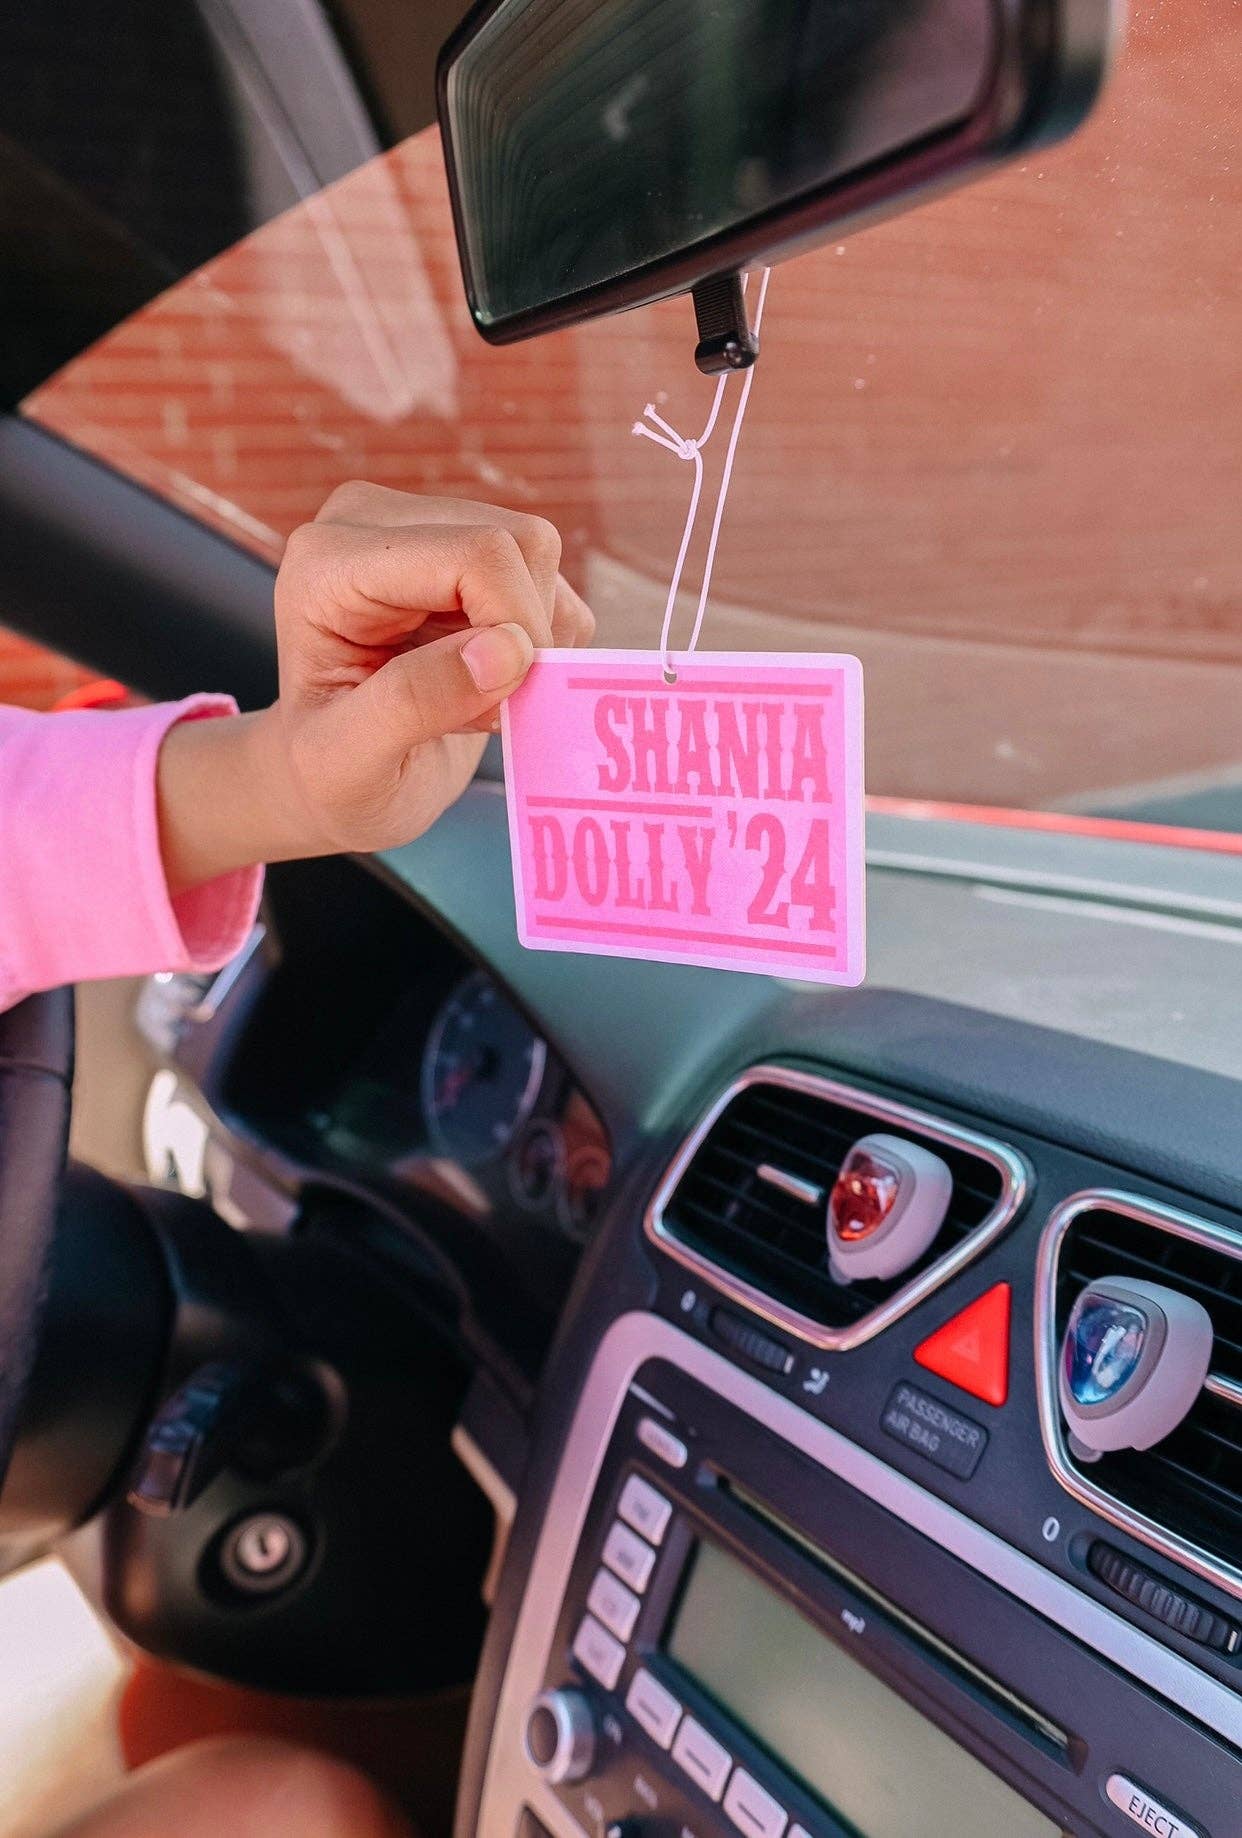 Shania Dolly '24 Air Freshener